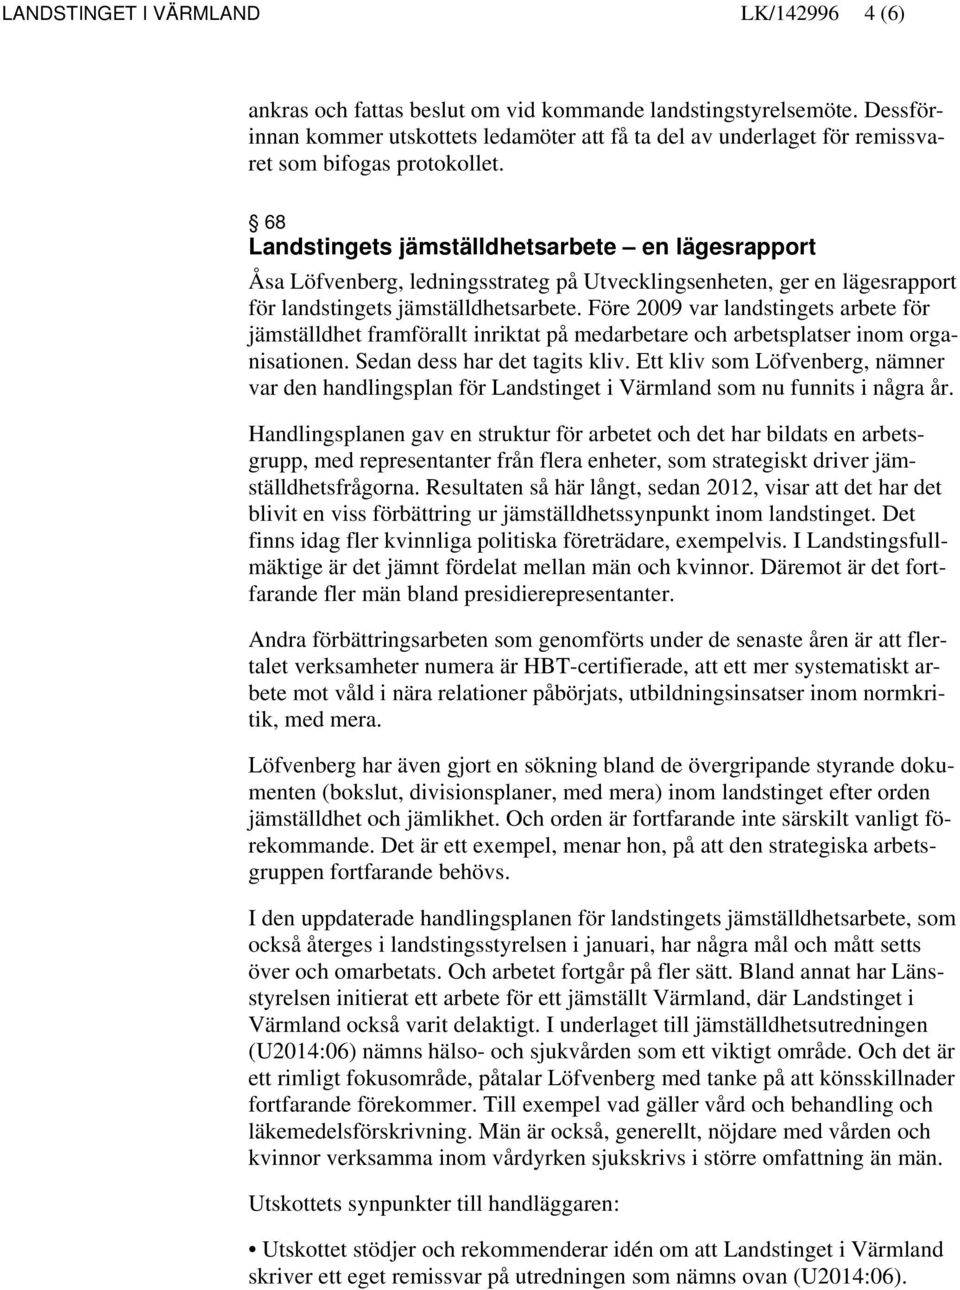 68 Landstingets jämställdhetsarbete en lägesrapport Åsa Löfvenberg, ledningsstrateg på Utvecklingsenheten, ger en lägesrapport för landstingets jämställdhetsarbete.